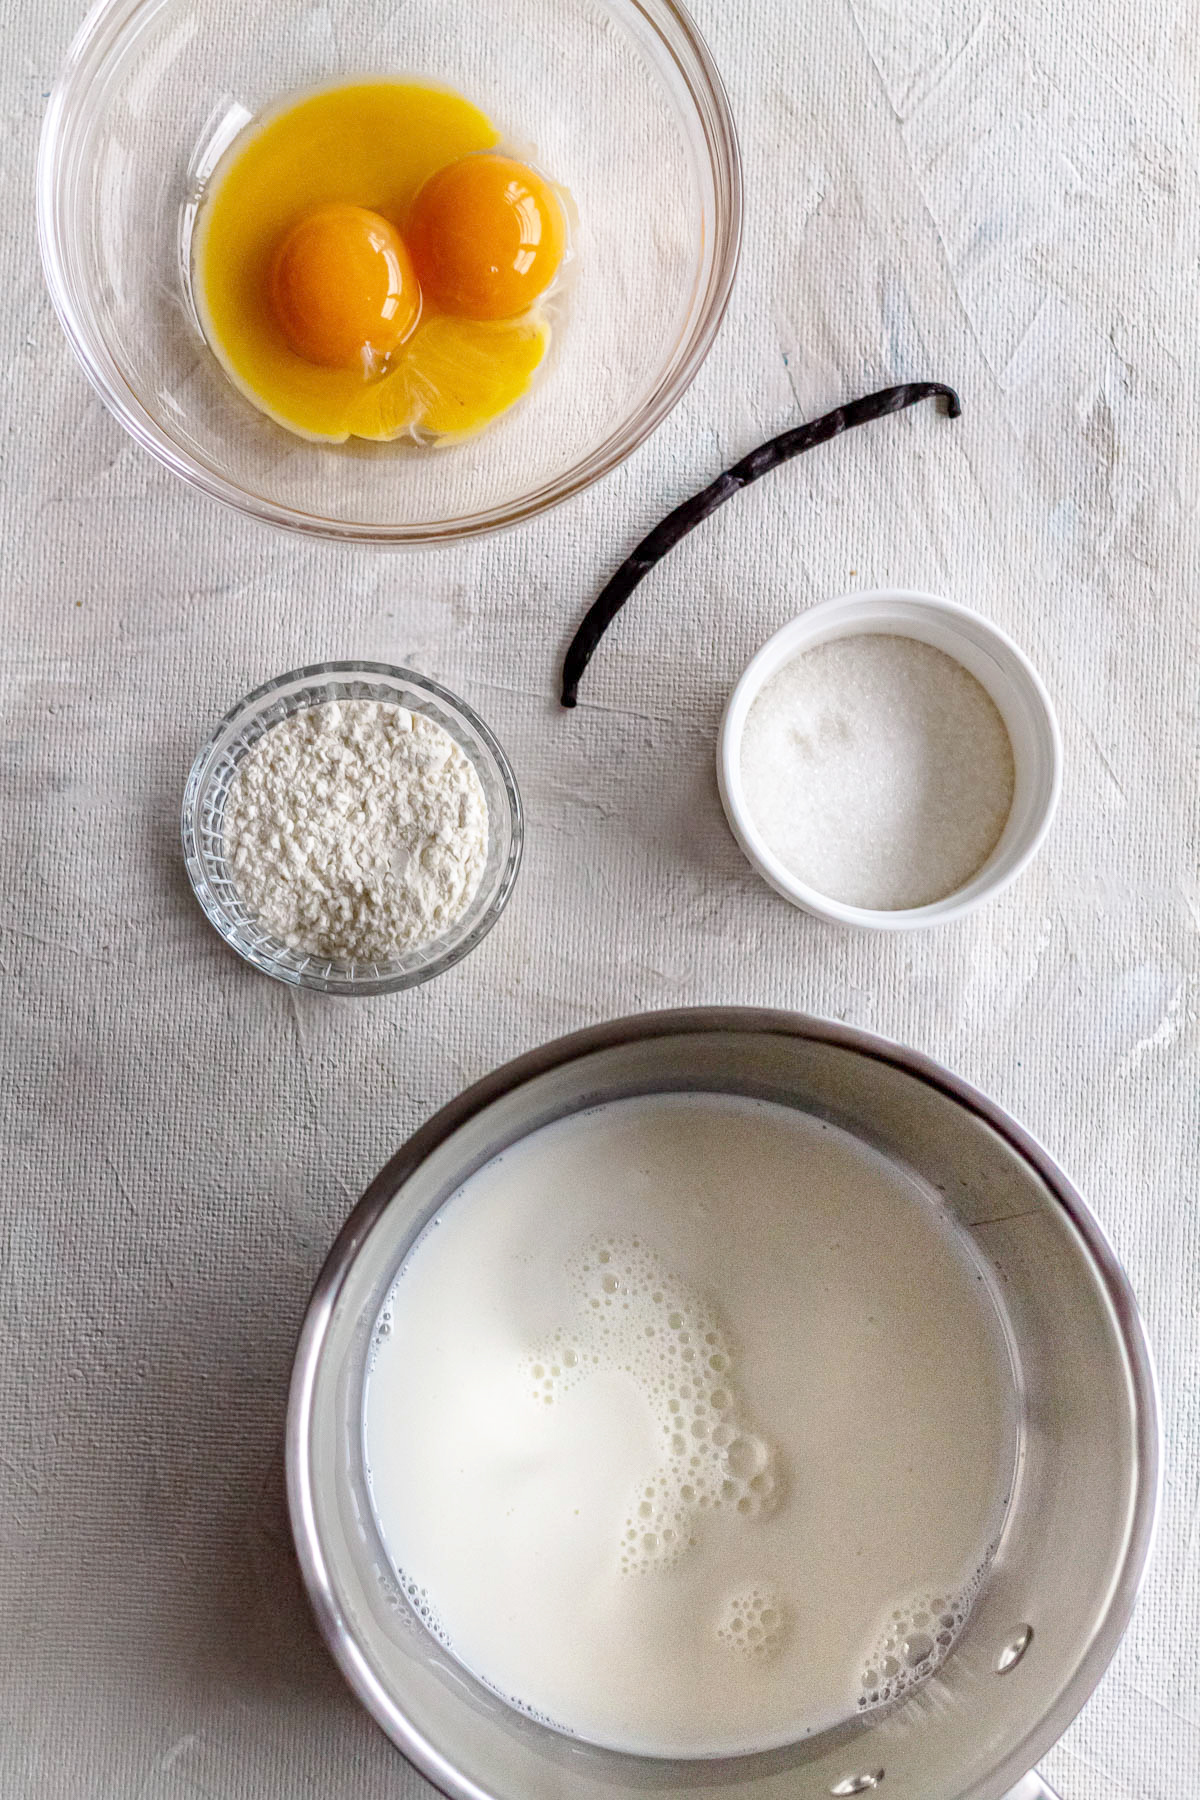 Cream Puffs - Profiterole Recipe